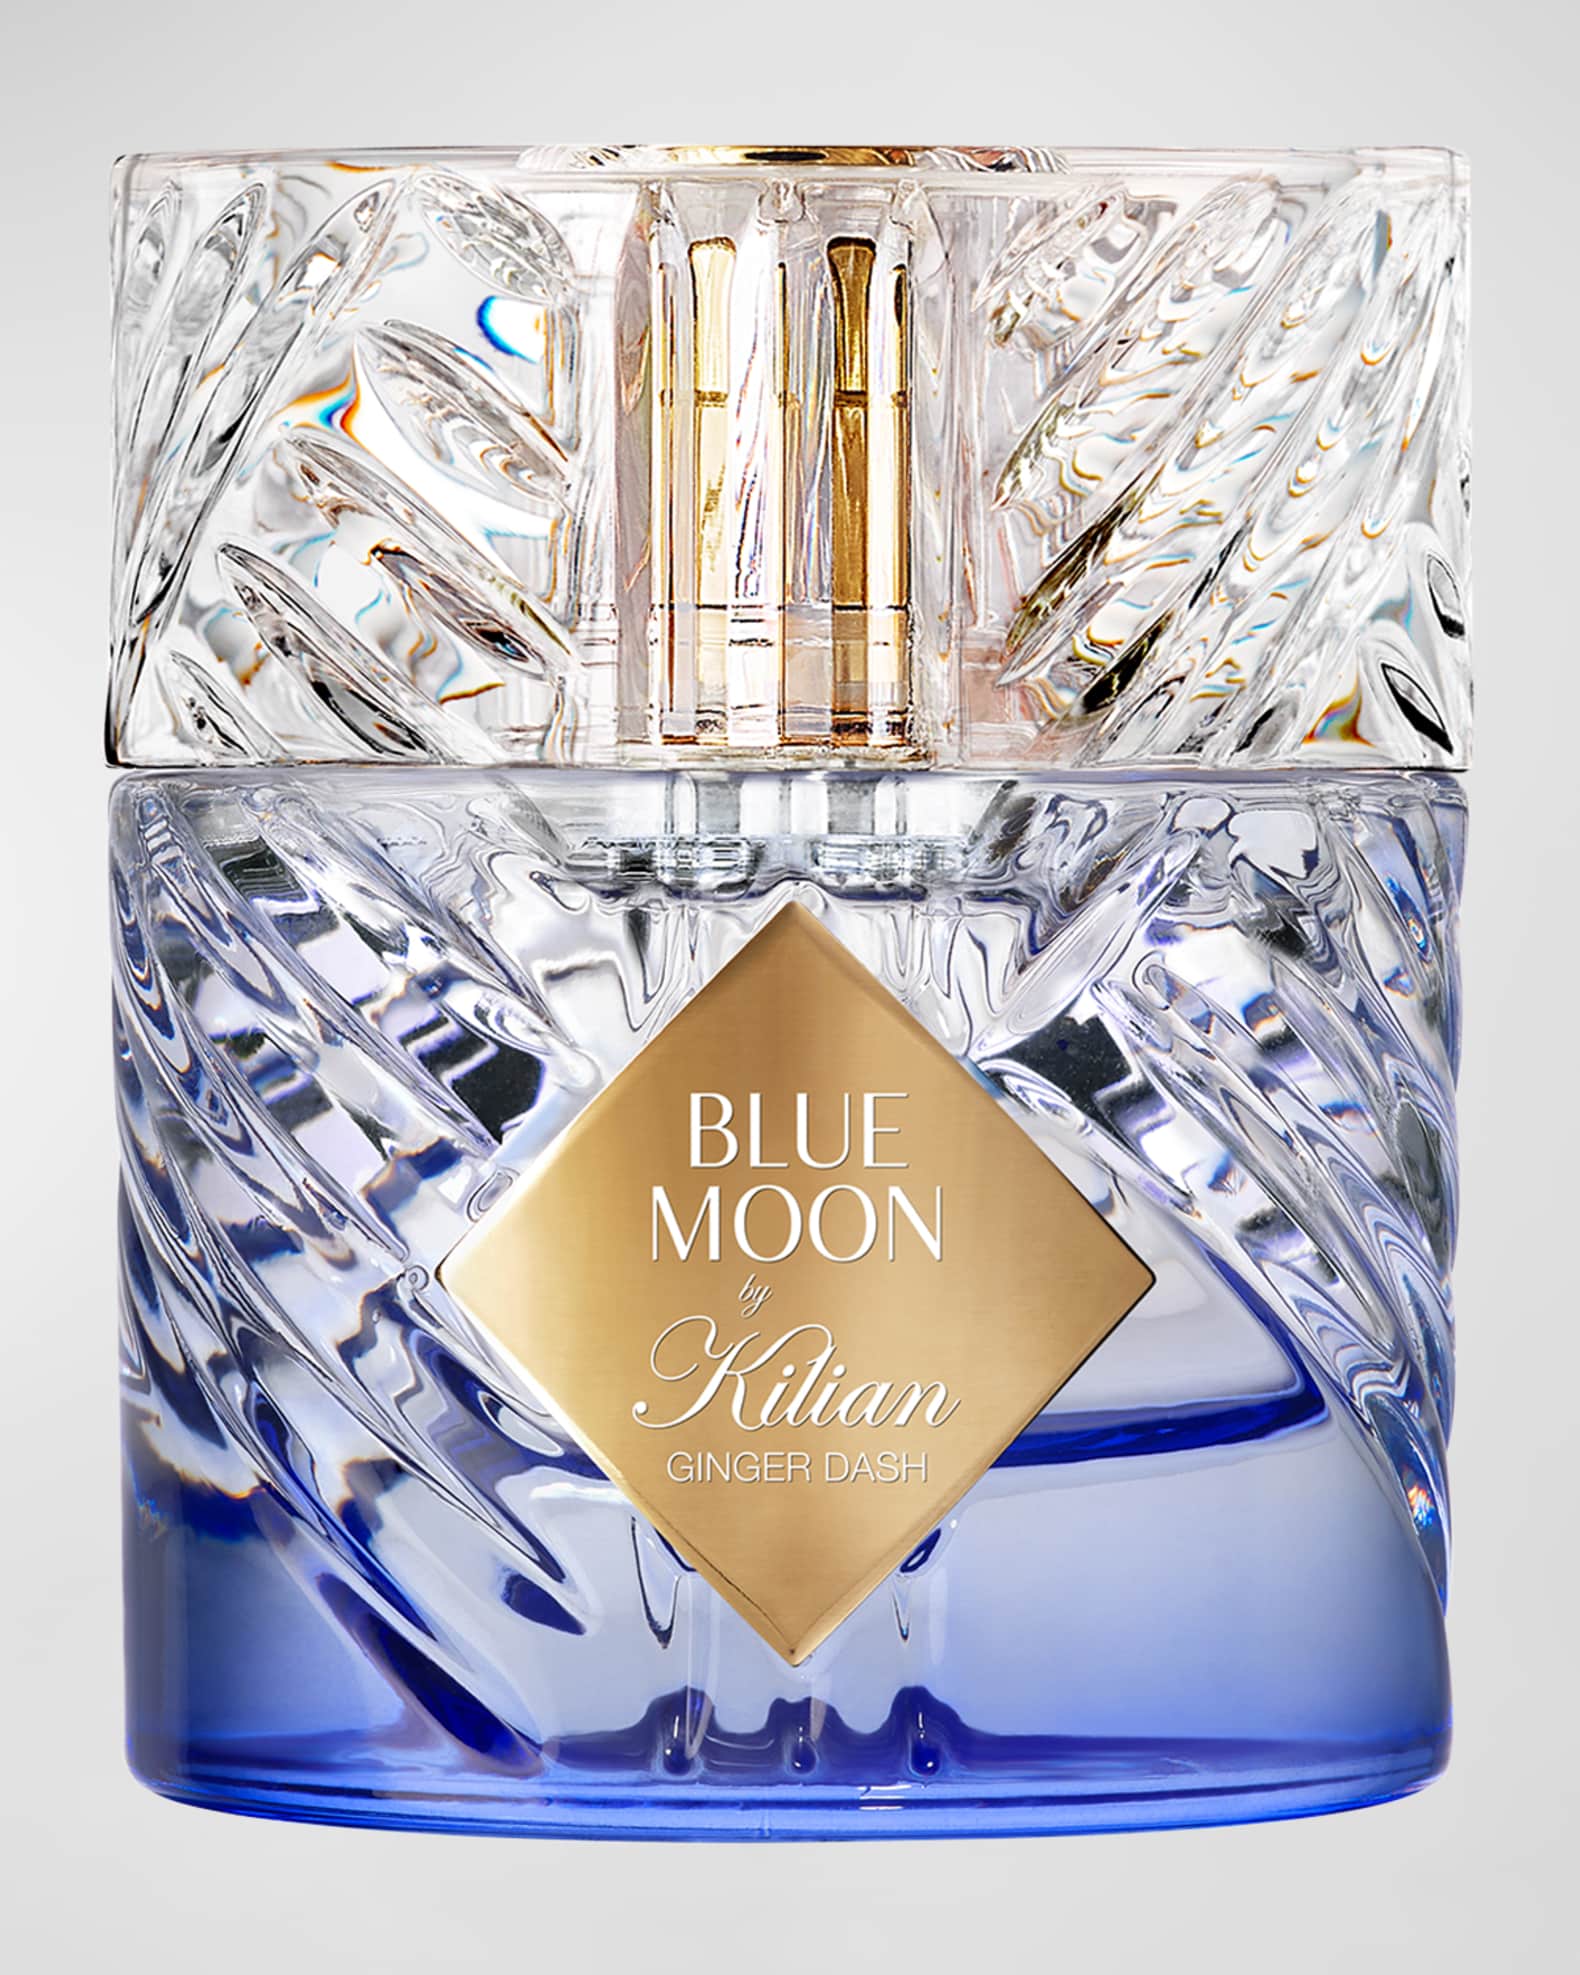 Kilian Blue Moon Ginger Dash Eau de Parfum, 1.7 oz.